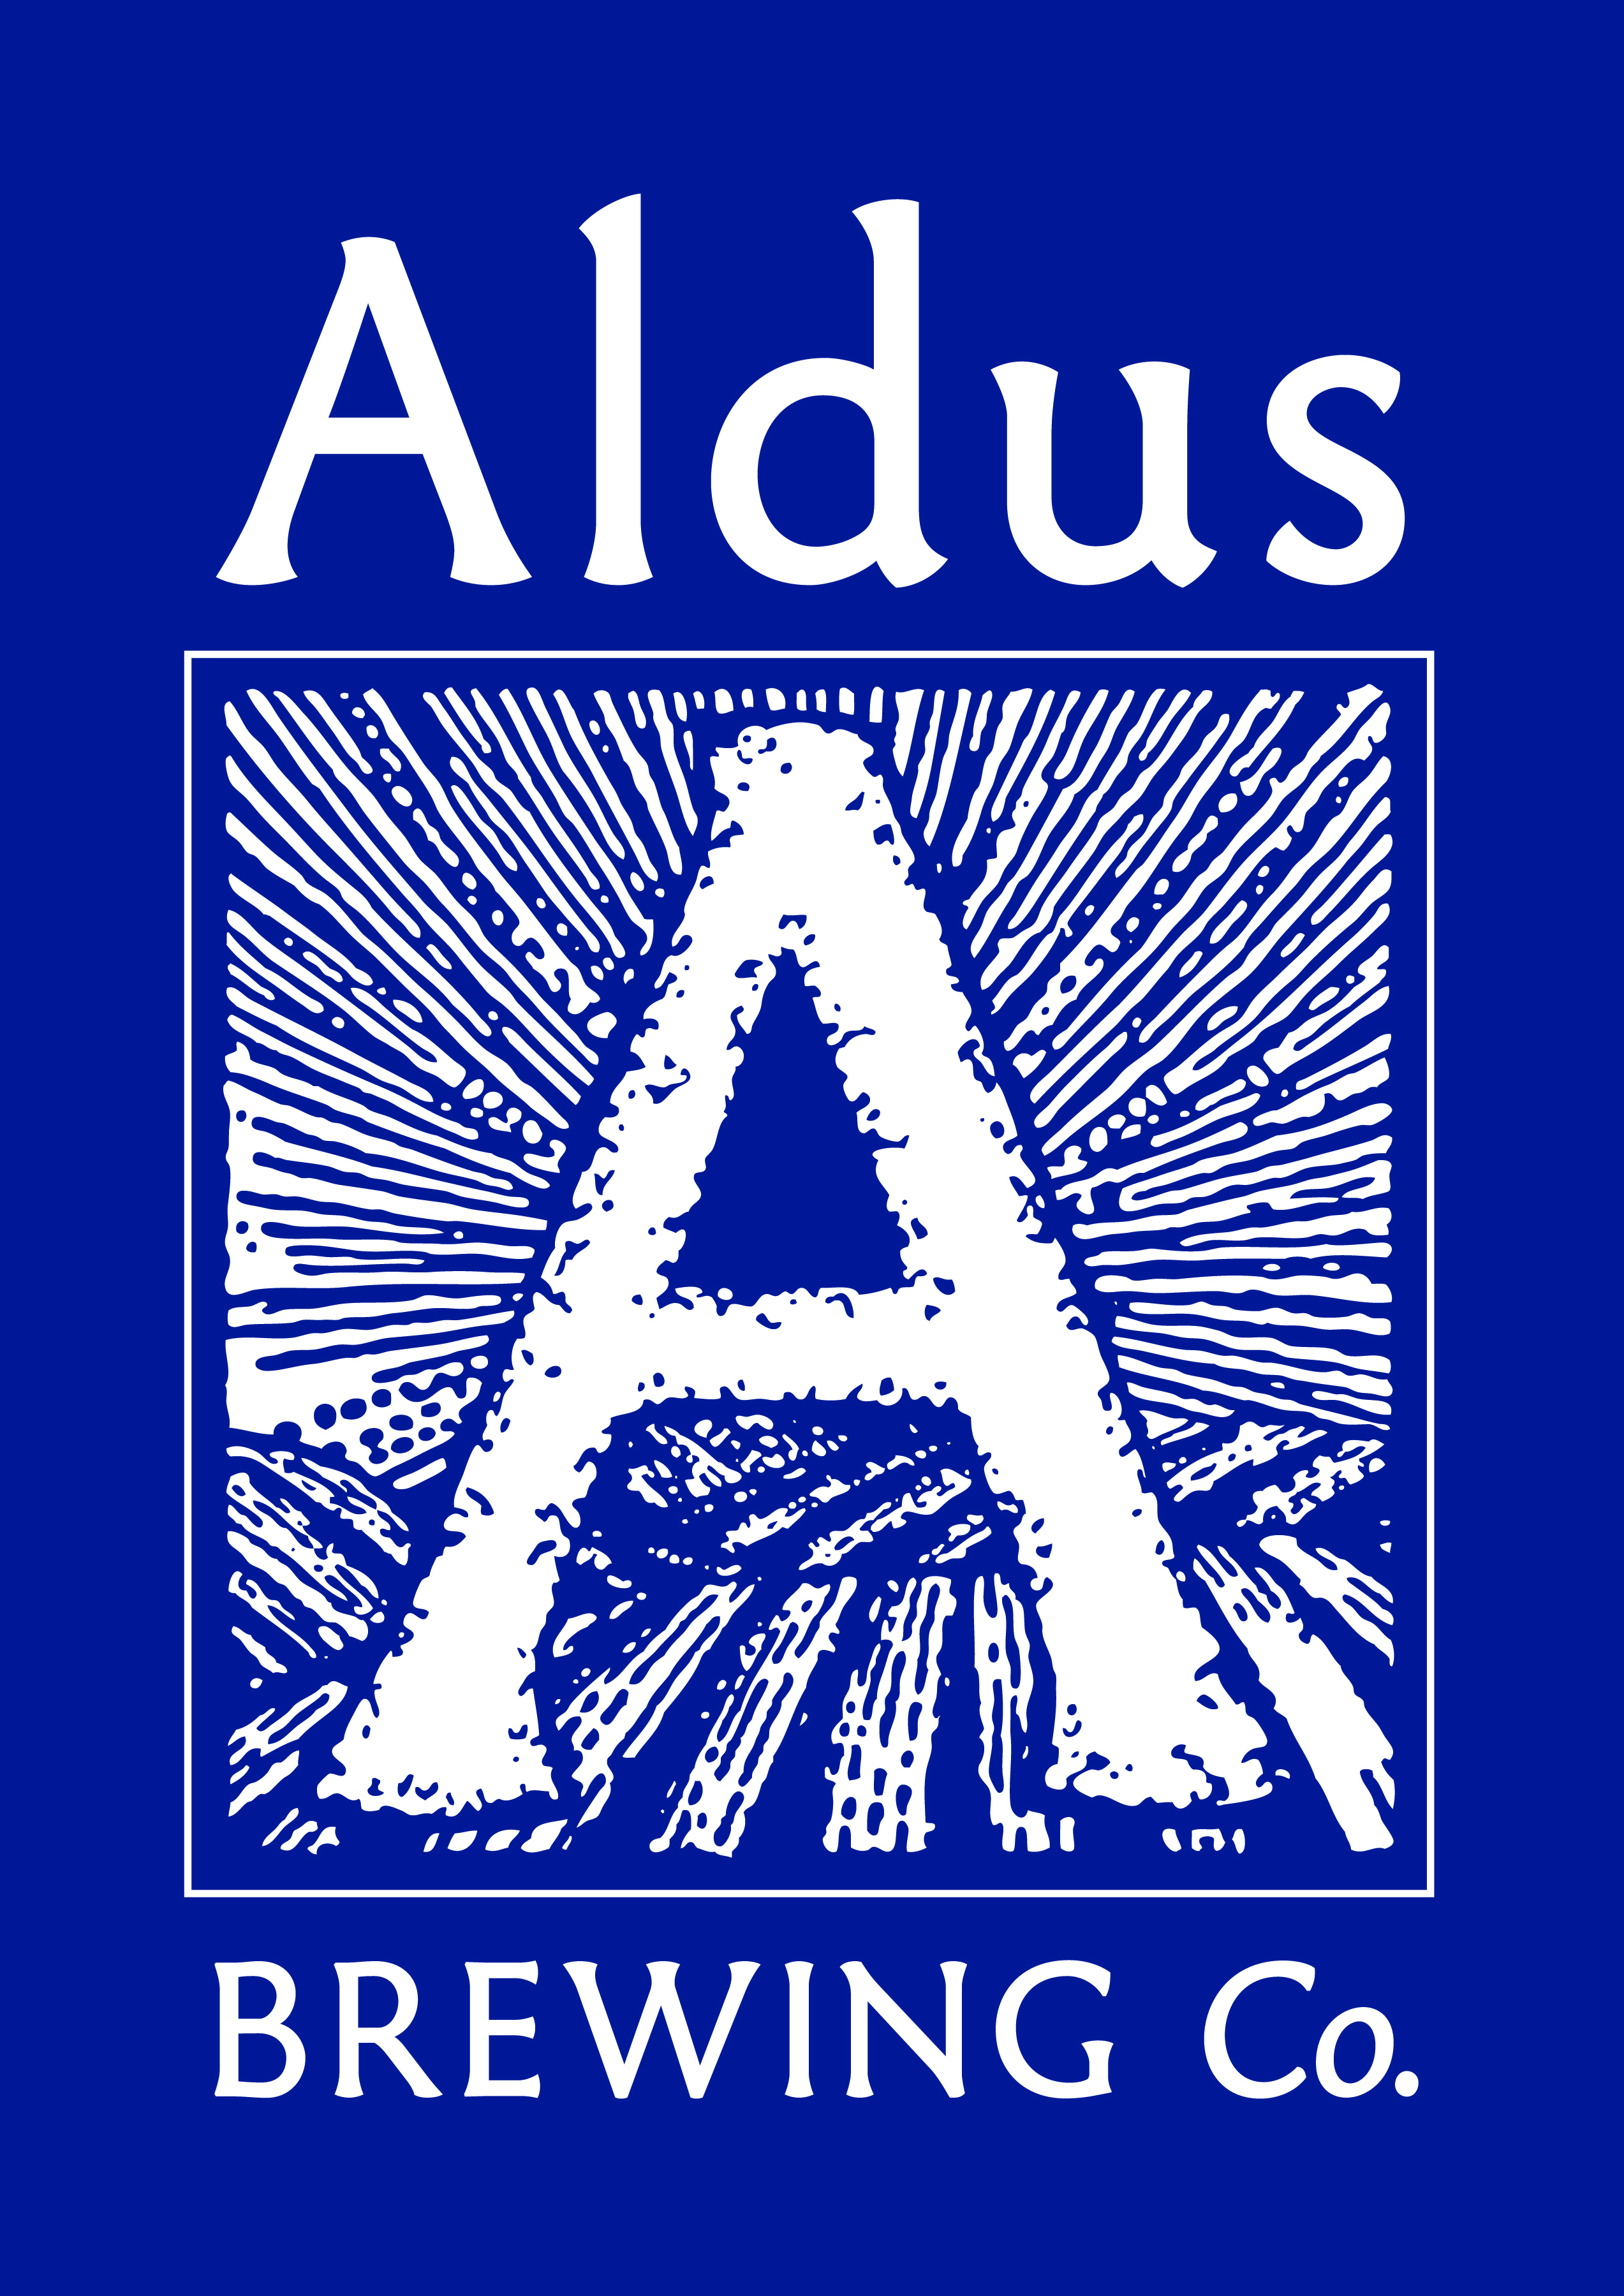 Aldus Brewing Company jobs